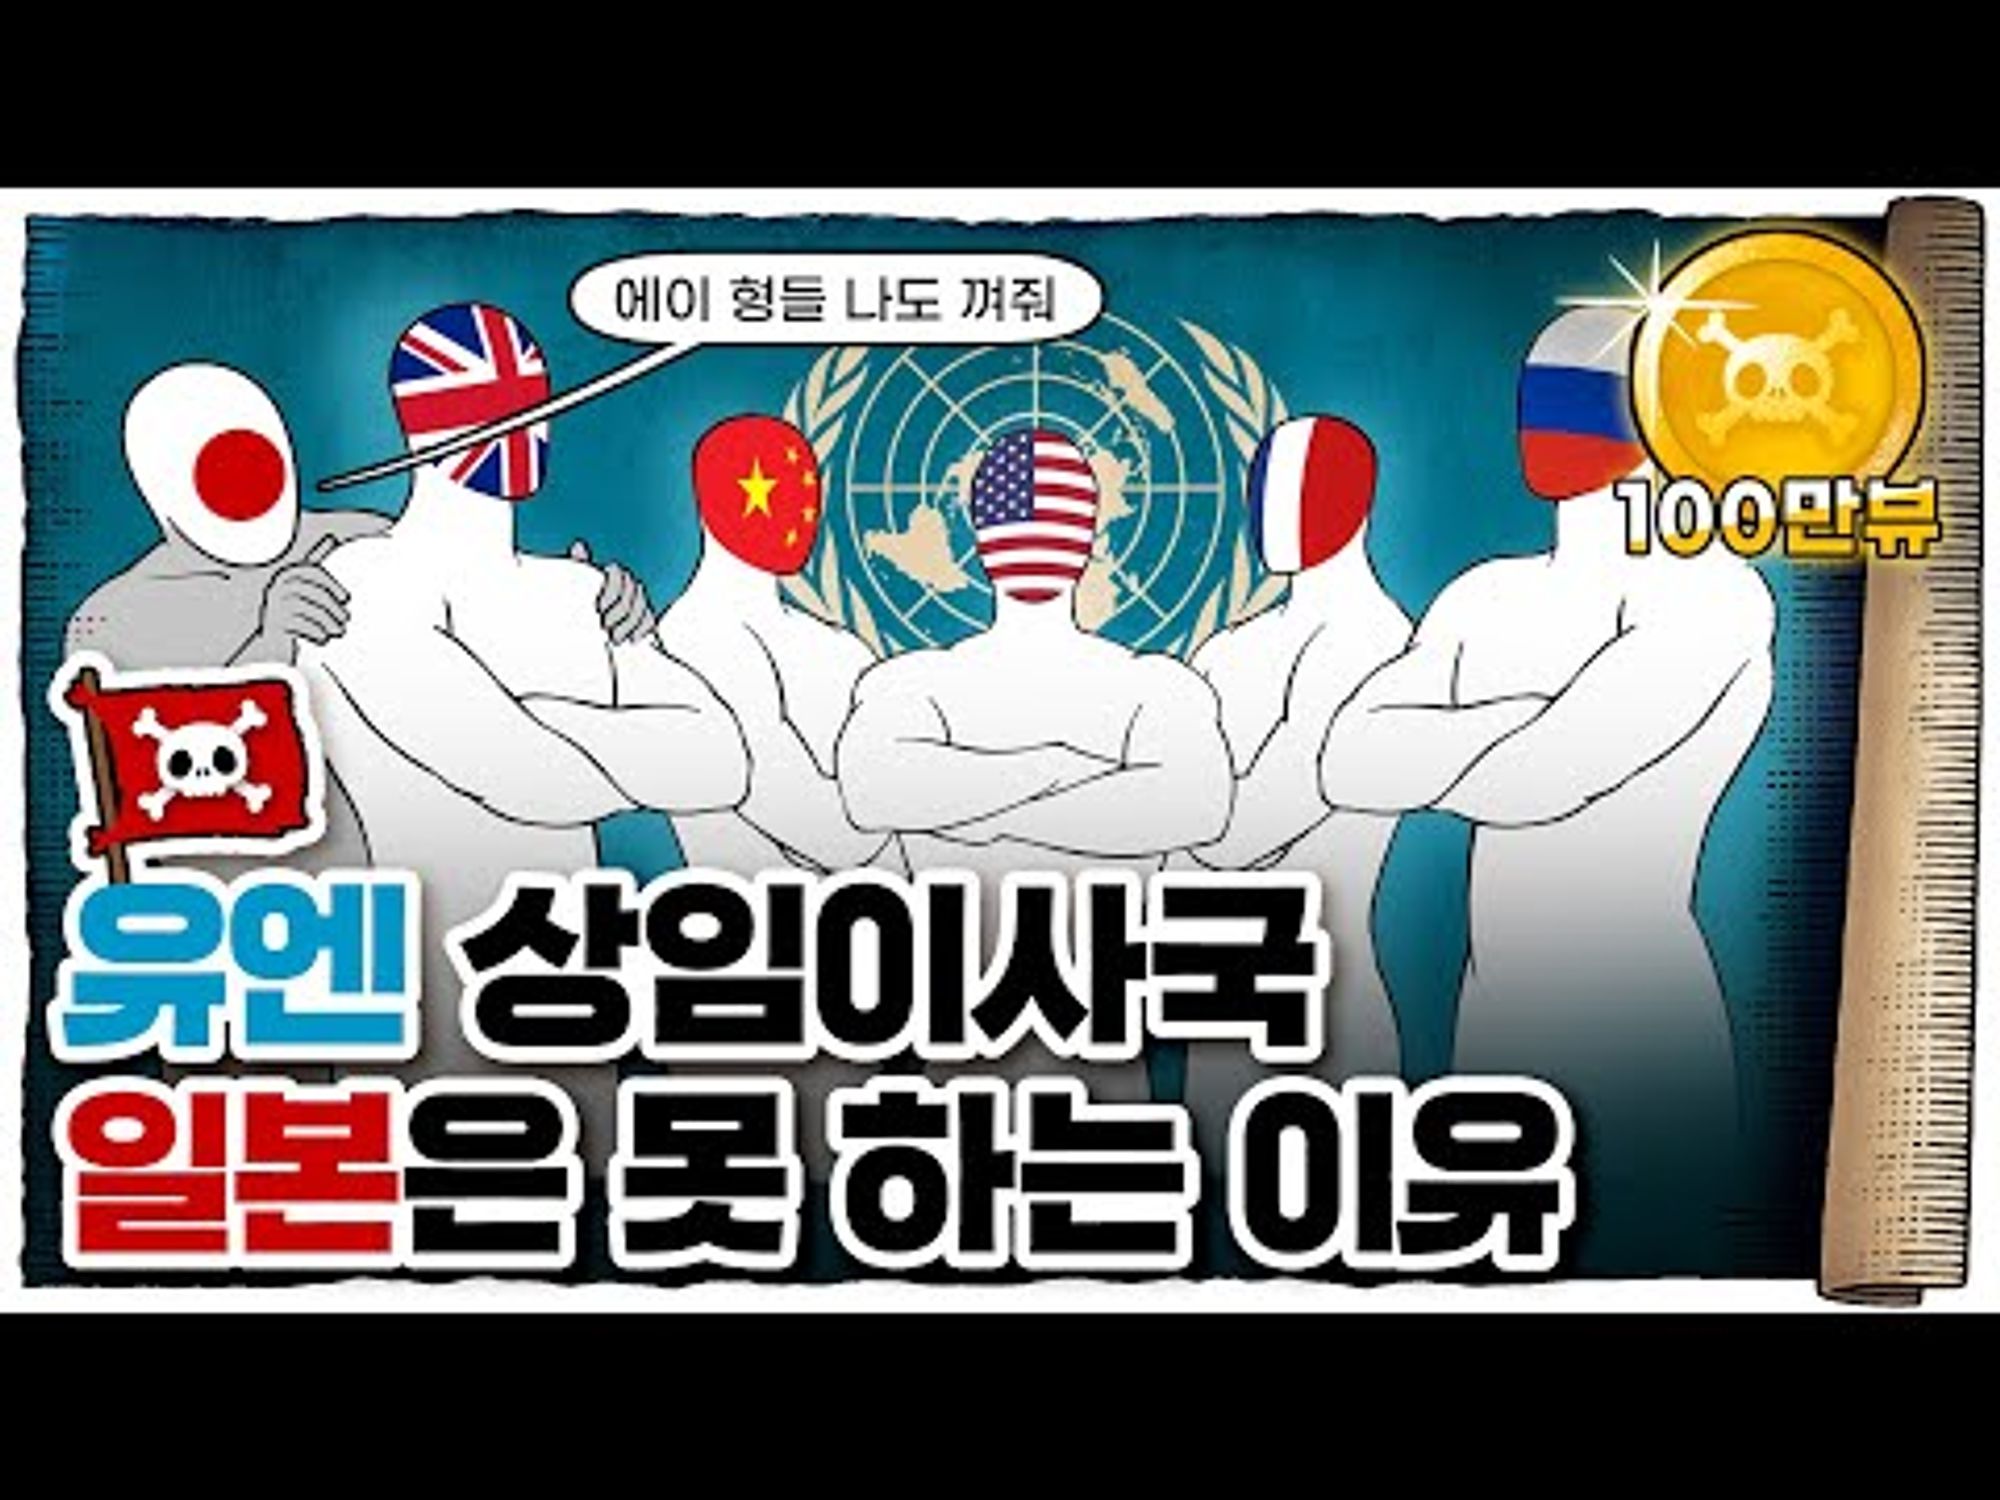 💀 커피 클럽? 유엔 상임이사국이 늘어나지 않는 이유! / 💀 국제연맹과 유엔의 역사